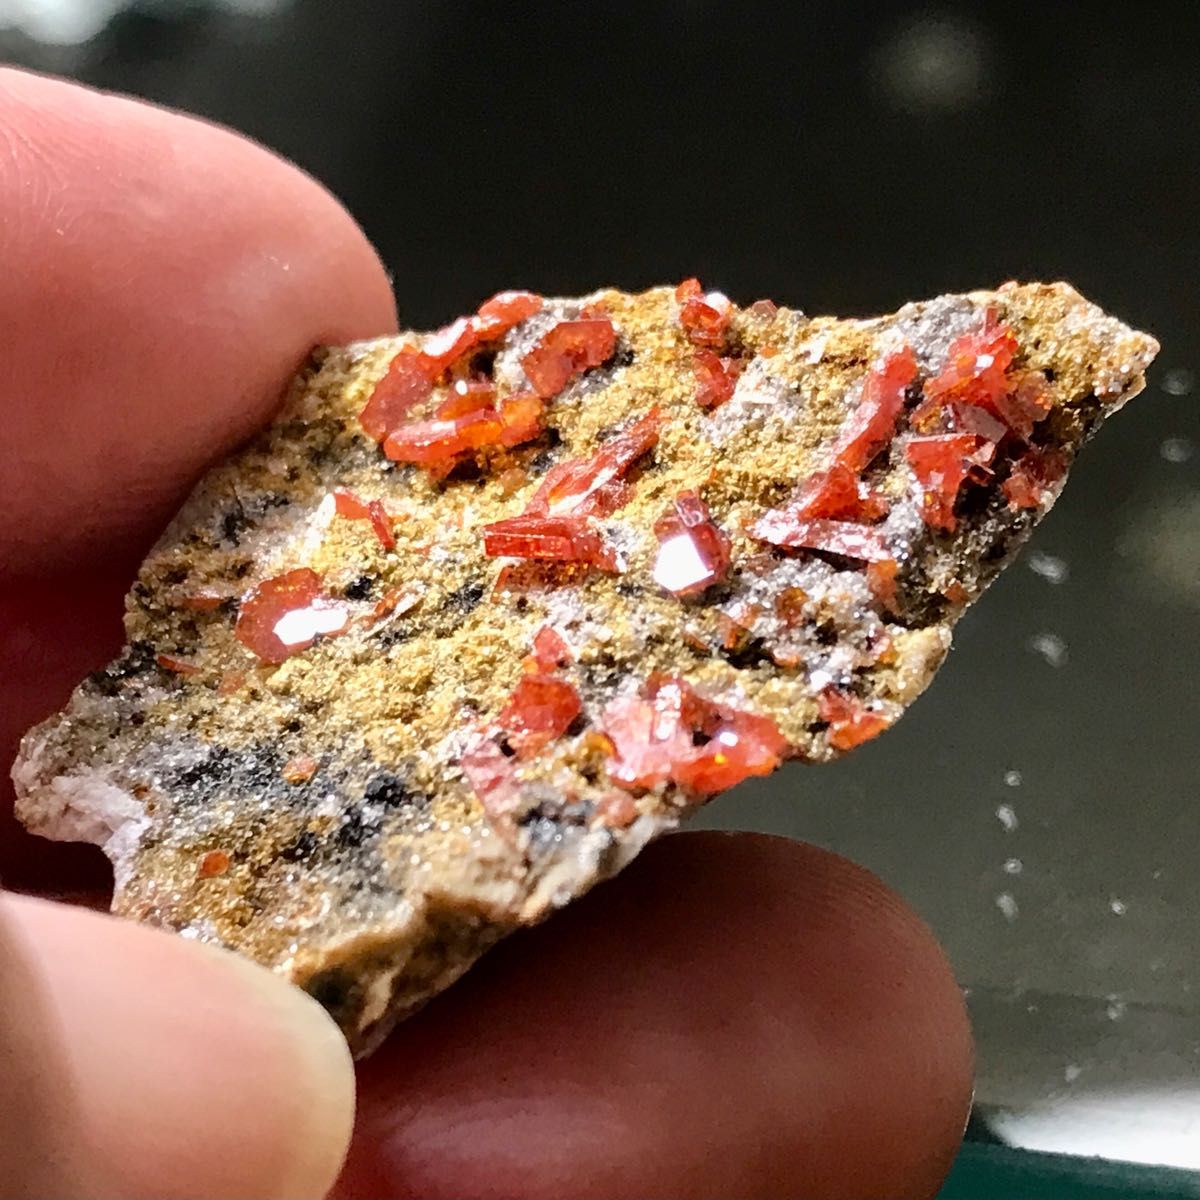 レア 鉱物 バナディナイト 原石 標本 モロッコ レア天然石 オレンジ レッド 43.75ct 一点もの 天然石コレクション 宝石